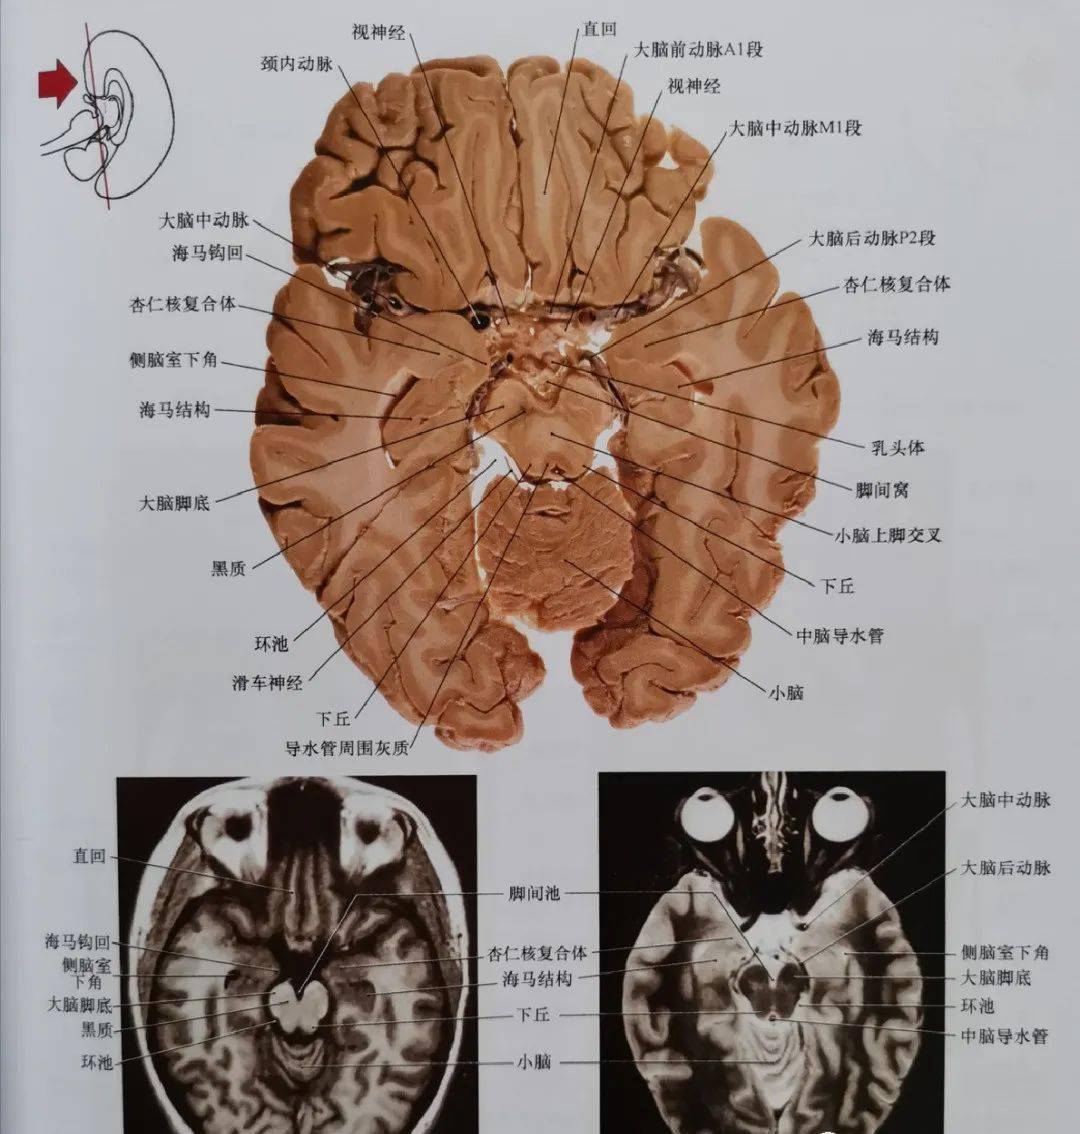 临床神经解剖图谱(断层影像 切片)_平面